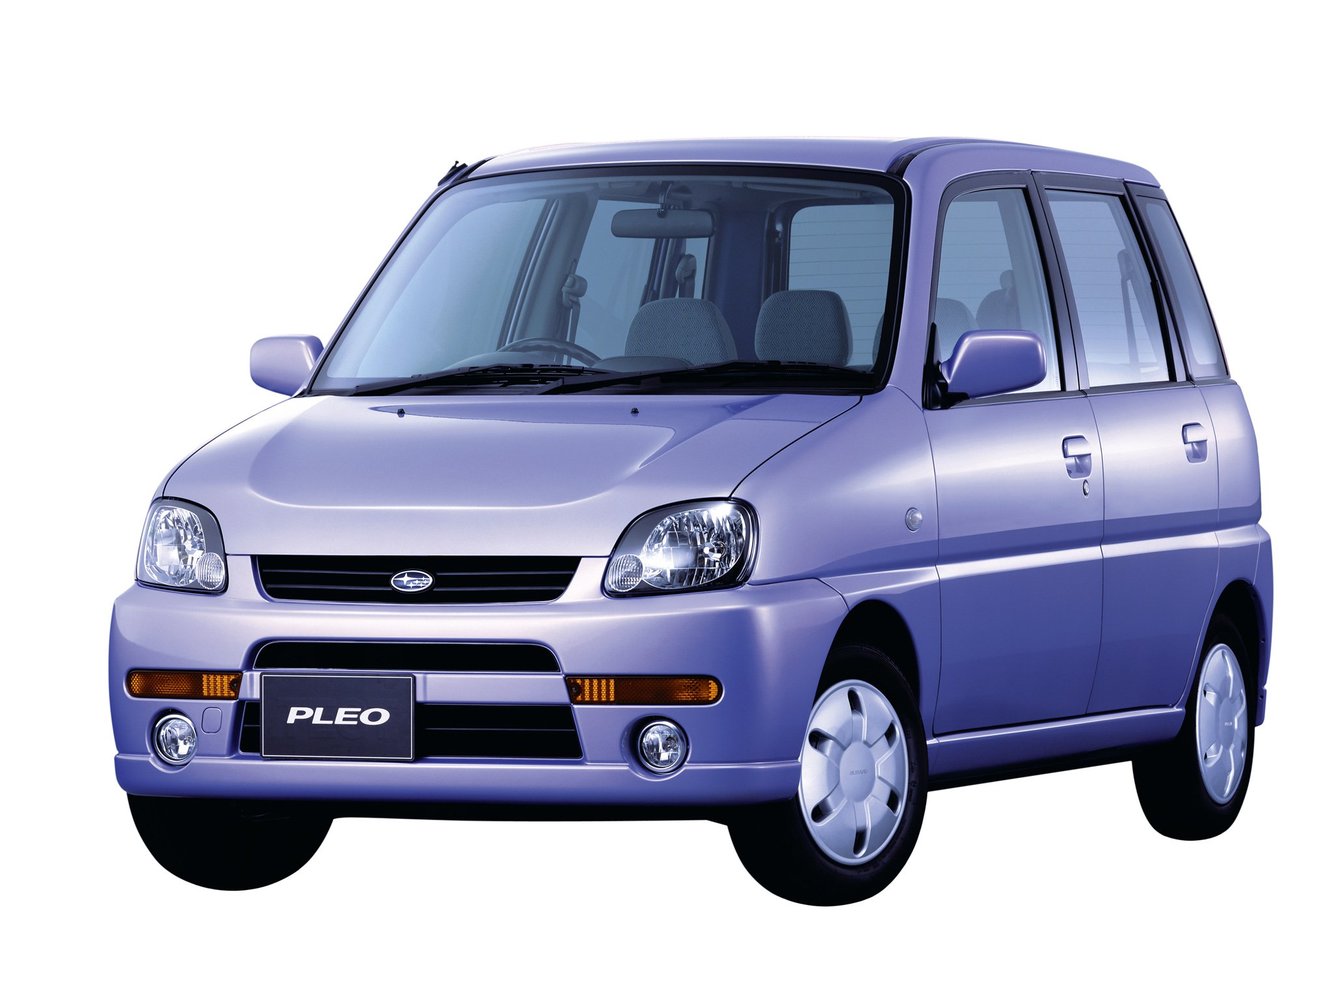 Subaru Pleo 2002 - 2004